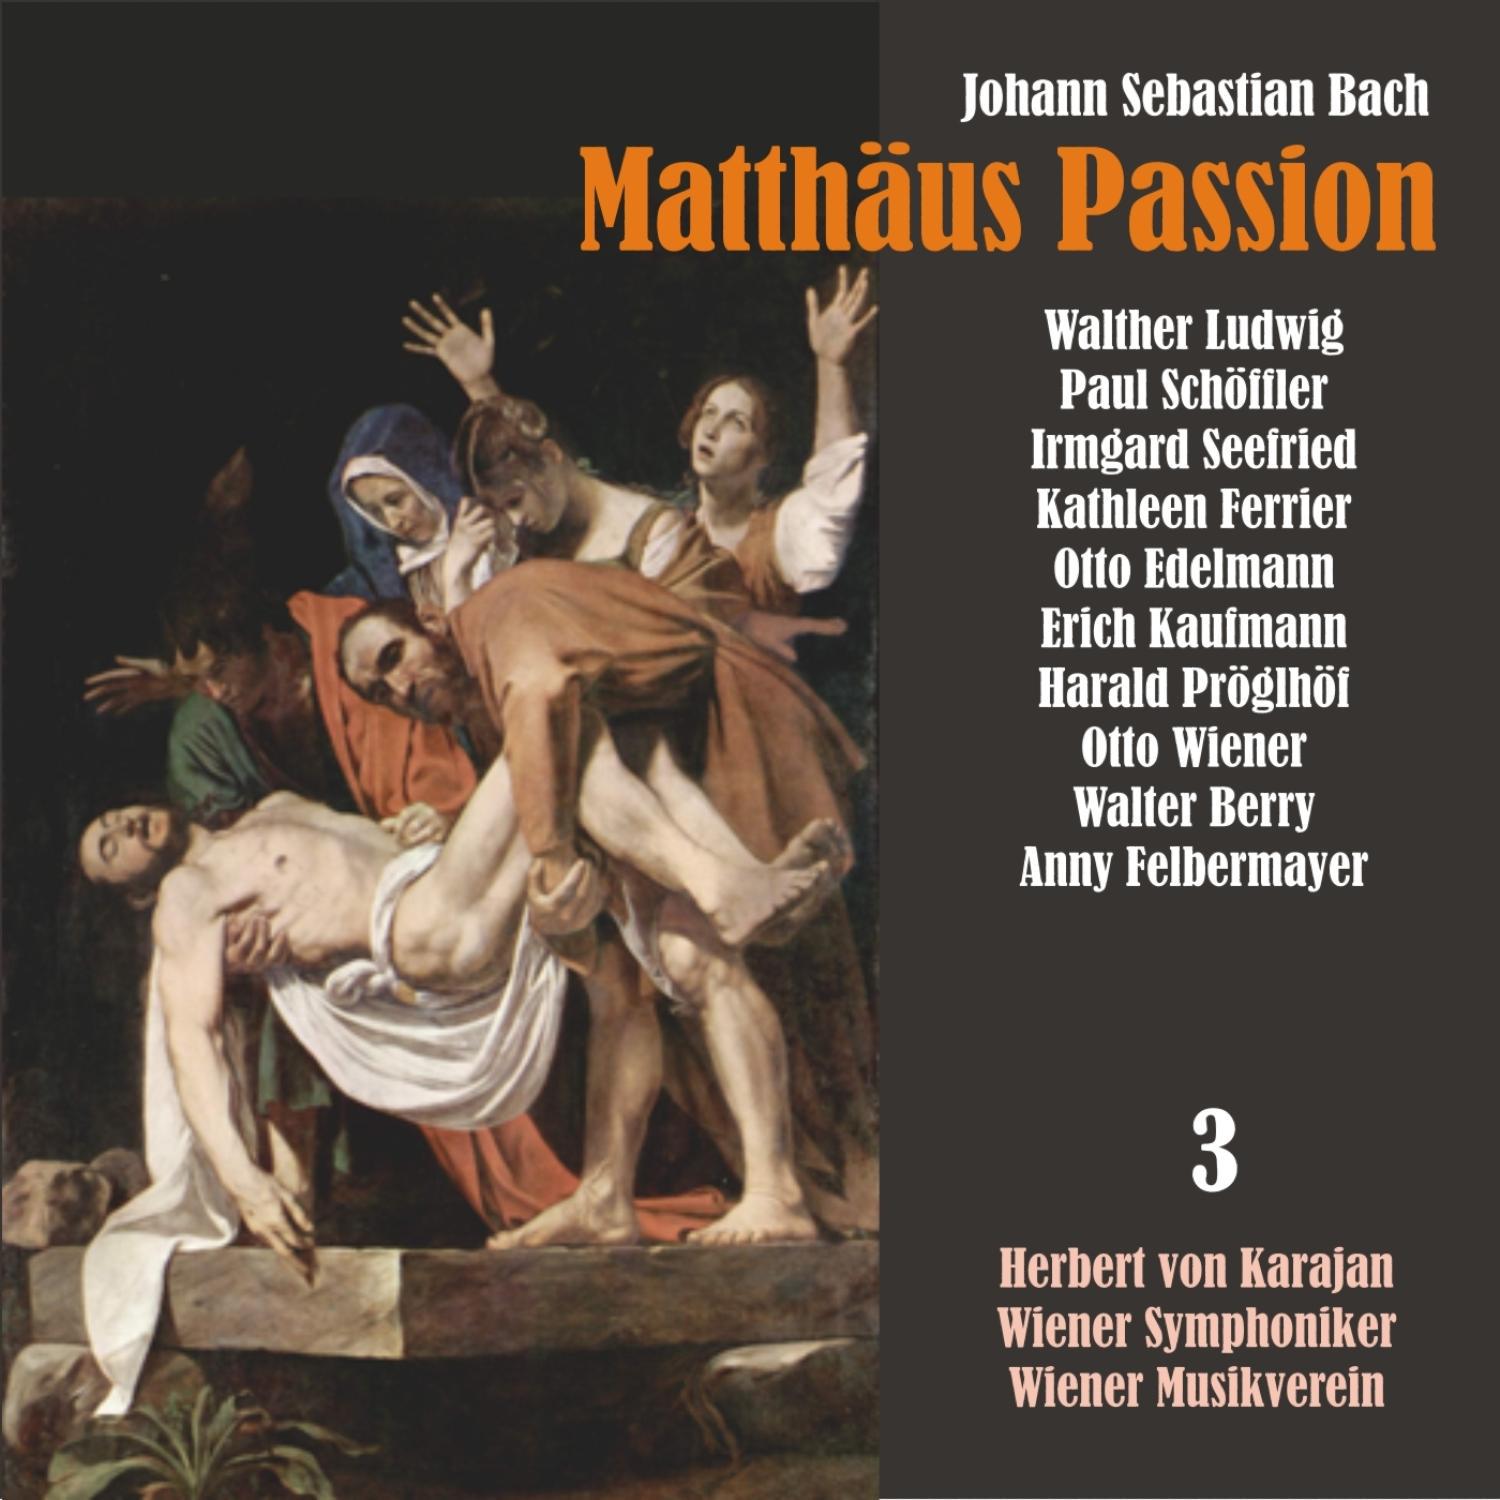 Matth us Passion, BWV 244: " Wenn iih einmaf sall scheiden"